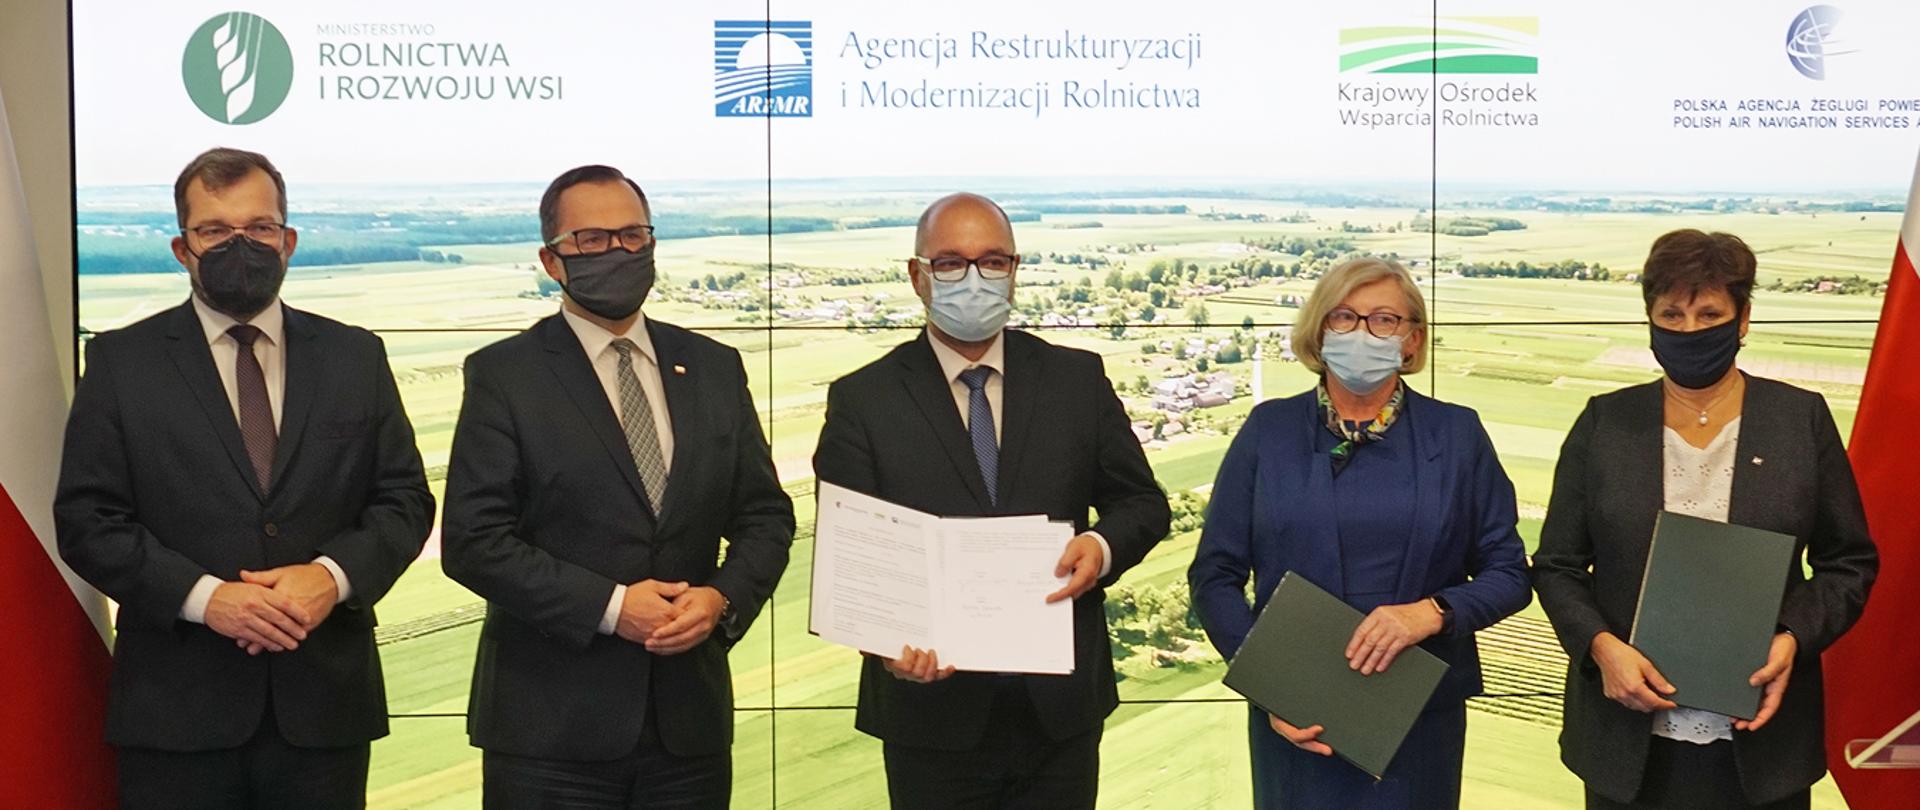 Minister Grzegorz Puda stojący wśród sygnatariuszy listu intencyjnego